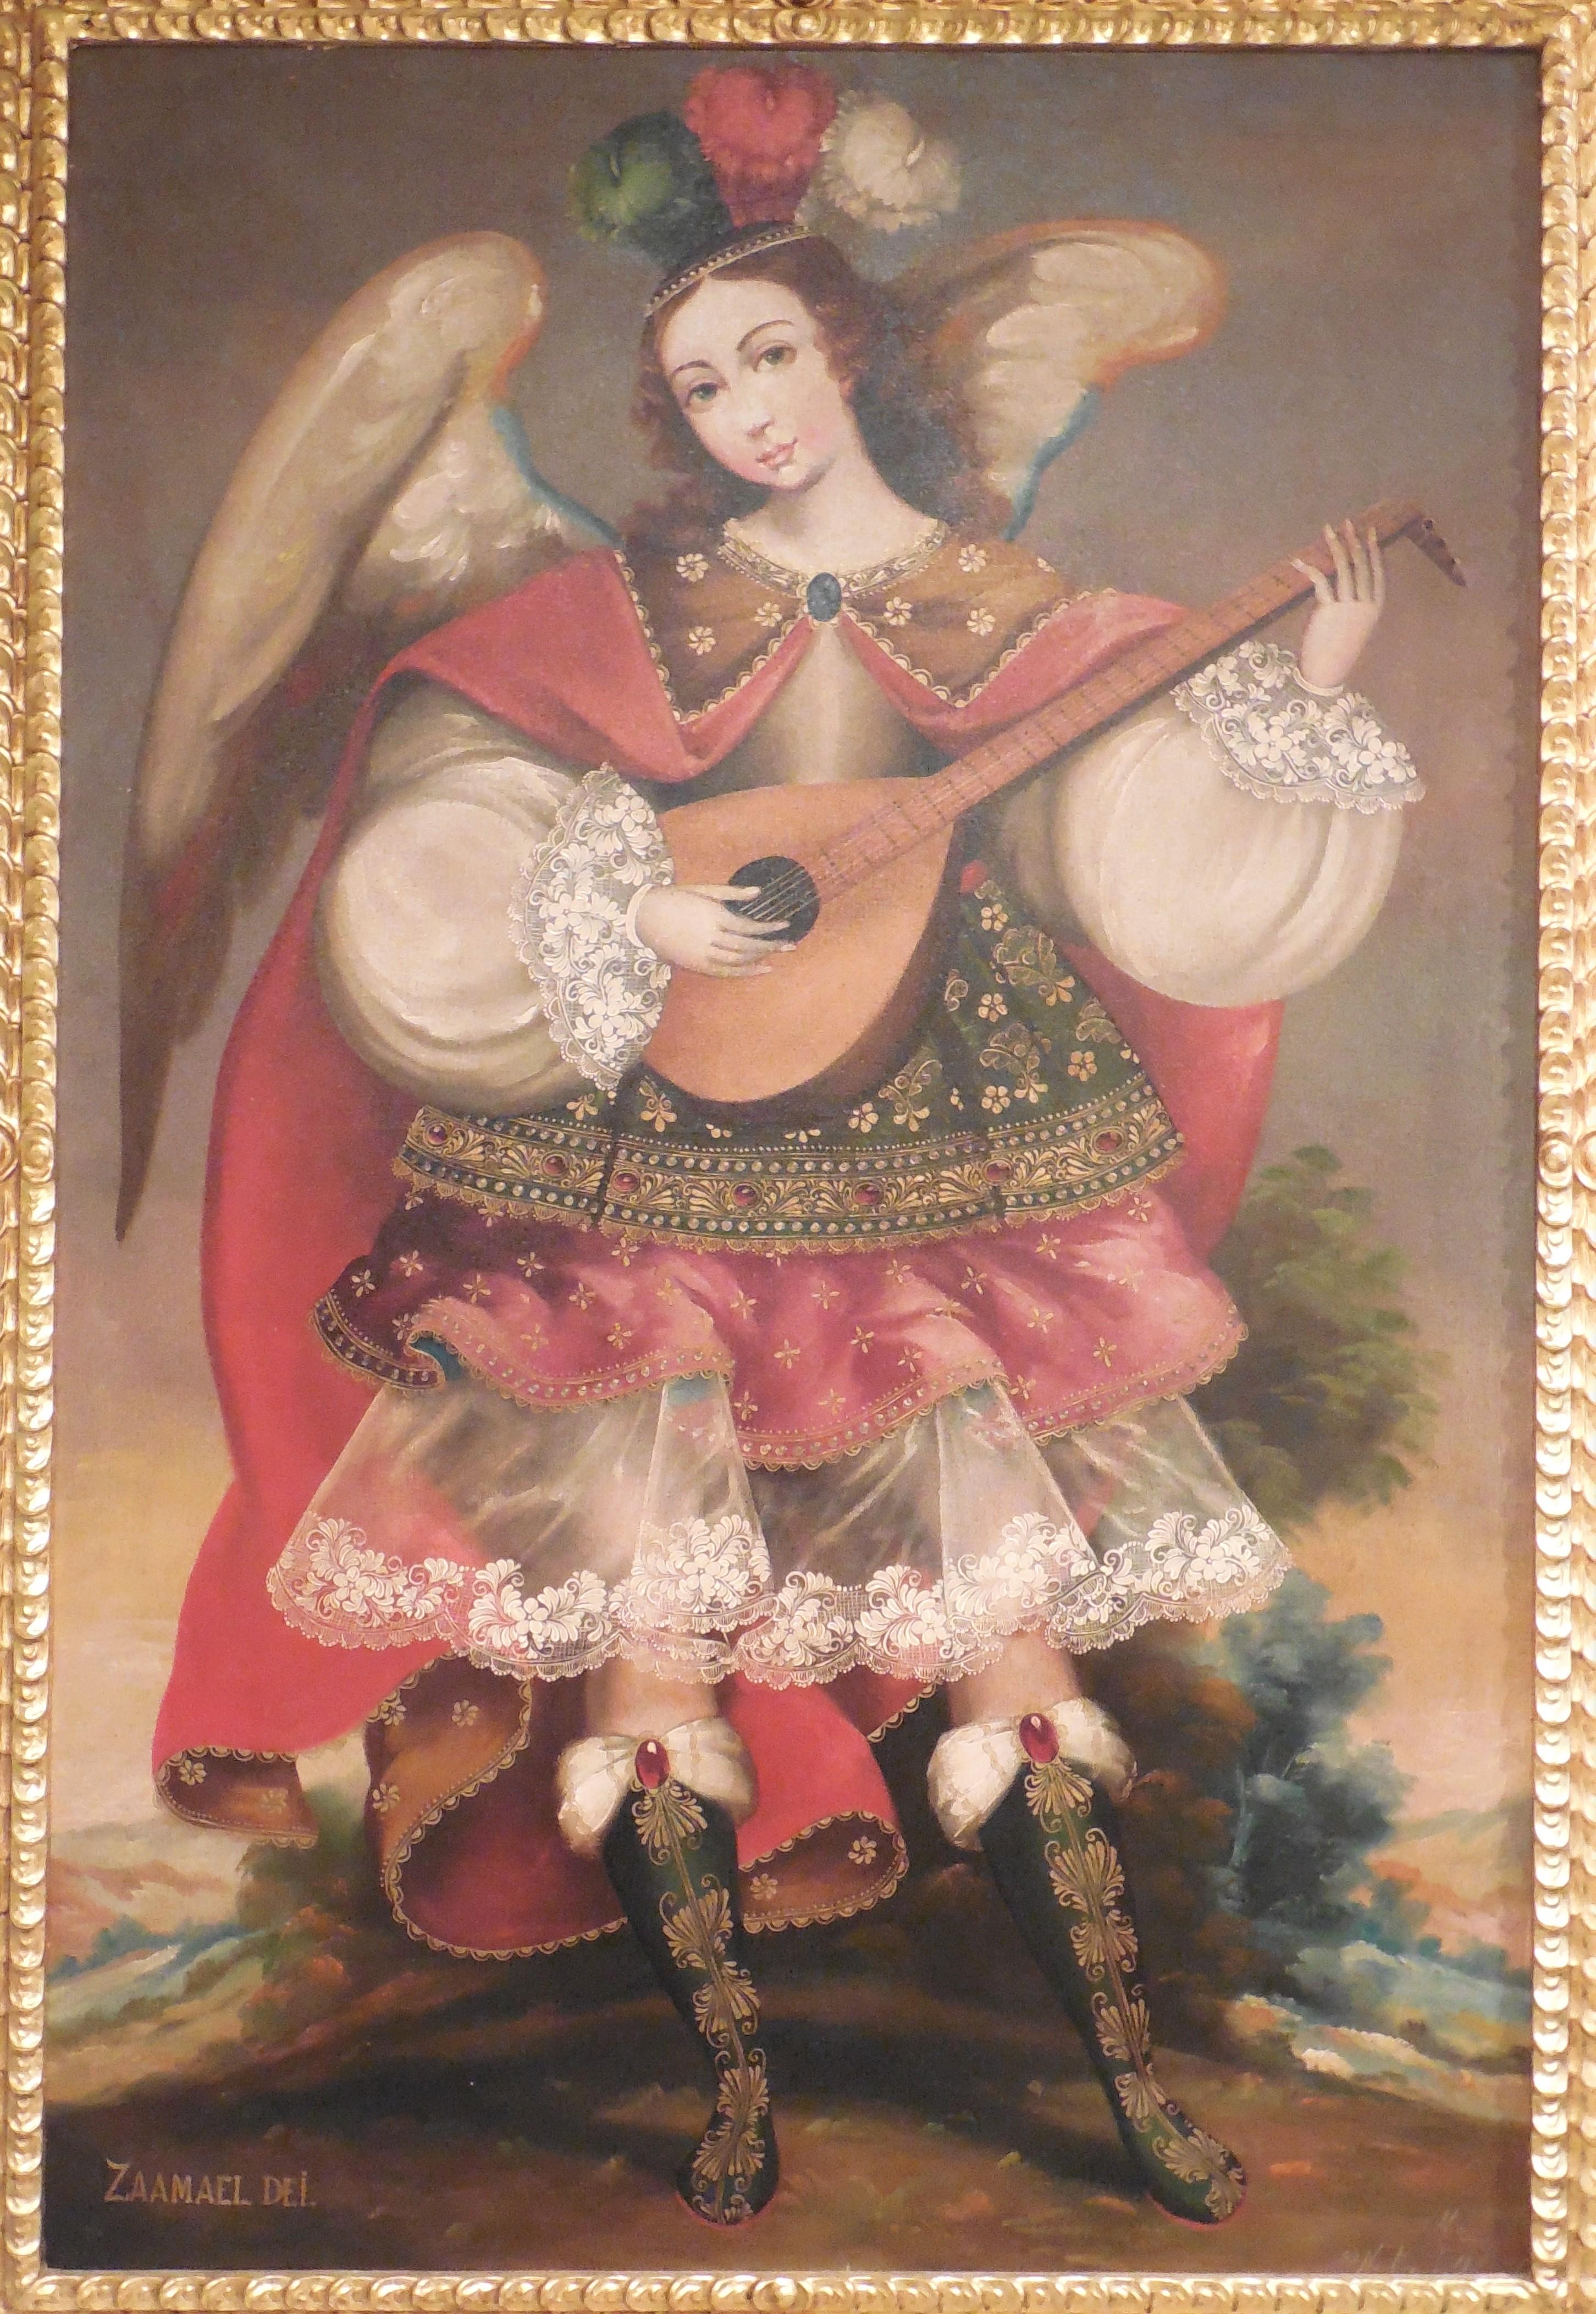 Zaamael Dei - Painting by Martha Ochoa